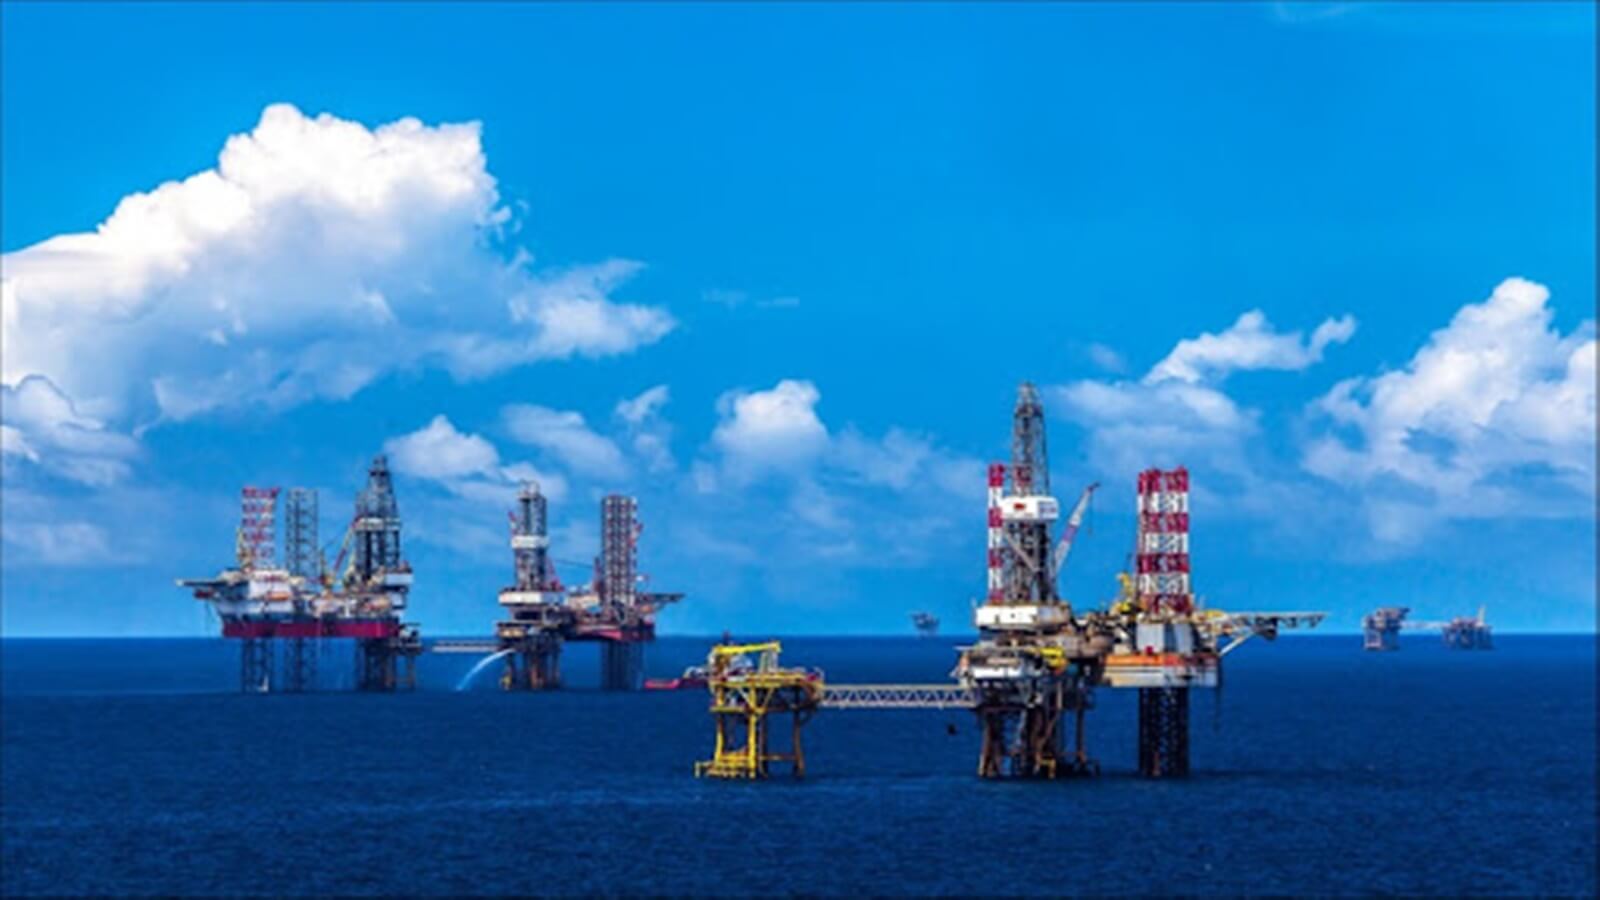 khu công nghiệp dịch vụ dầu khí soài rạp (5)